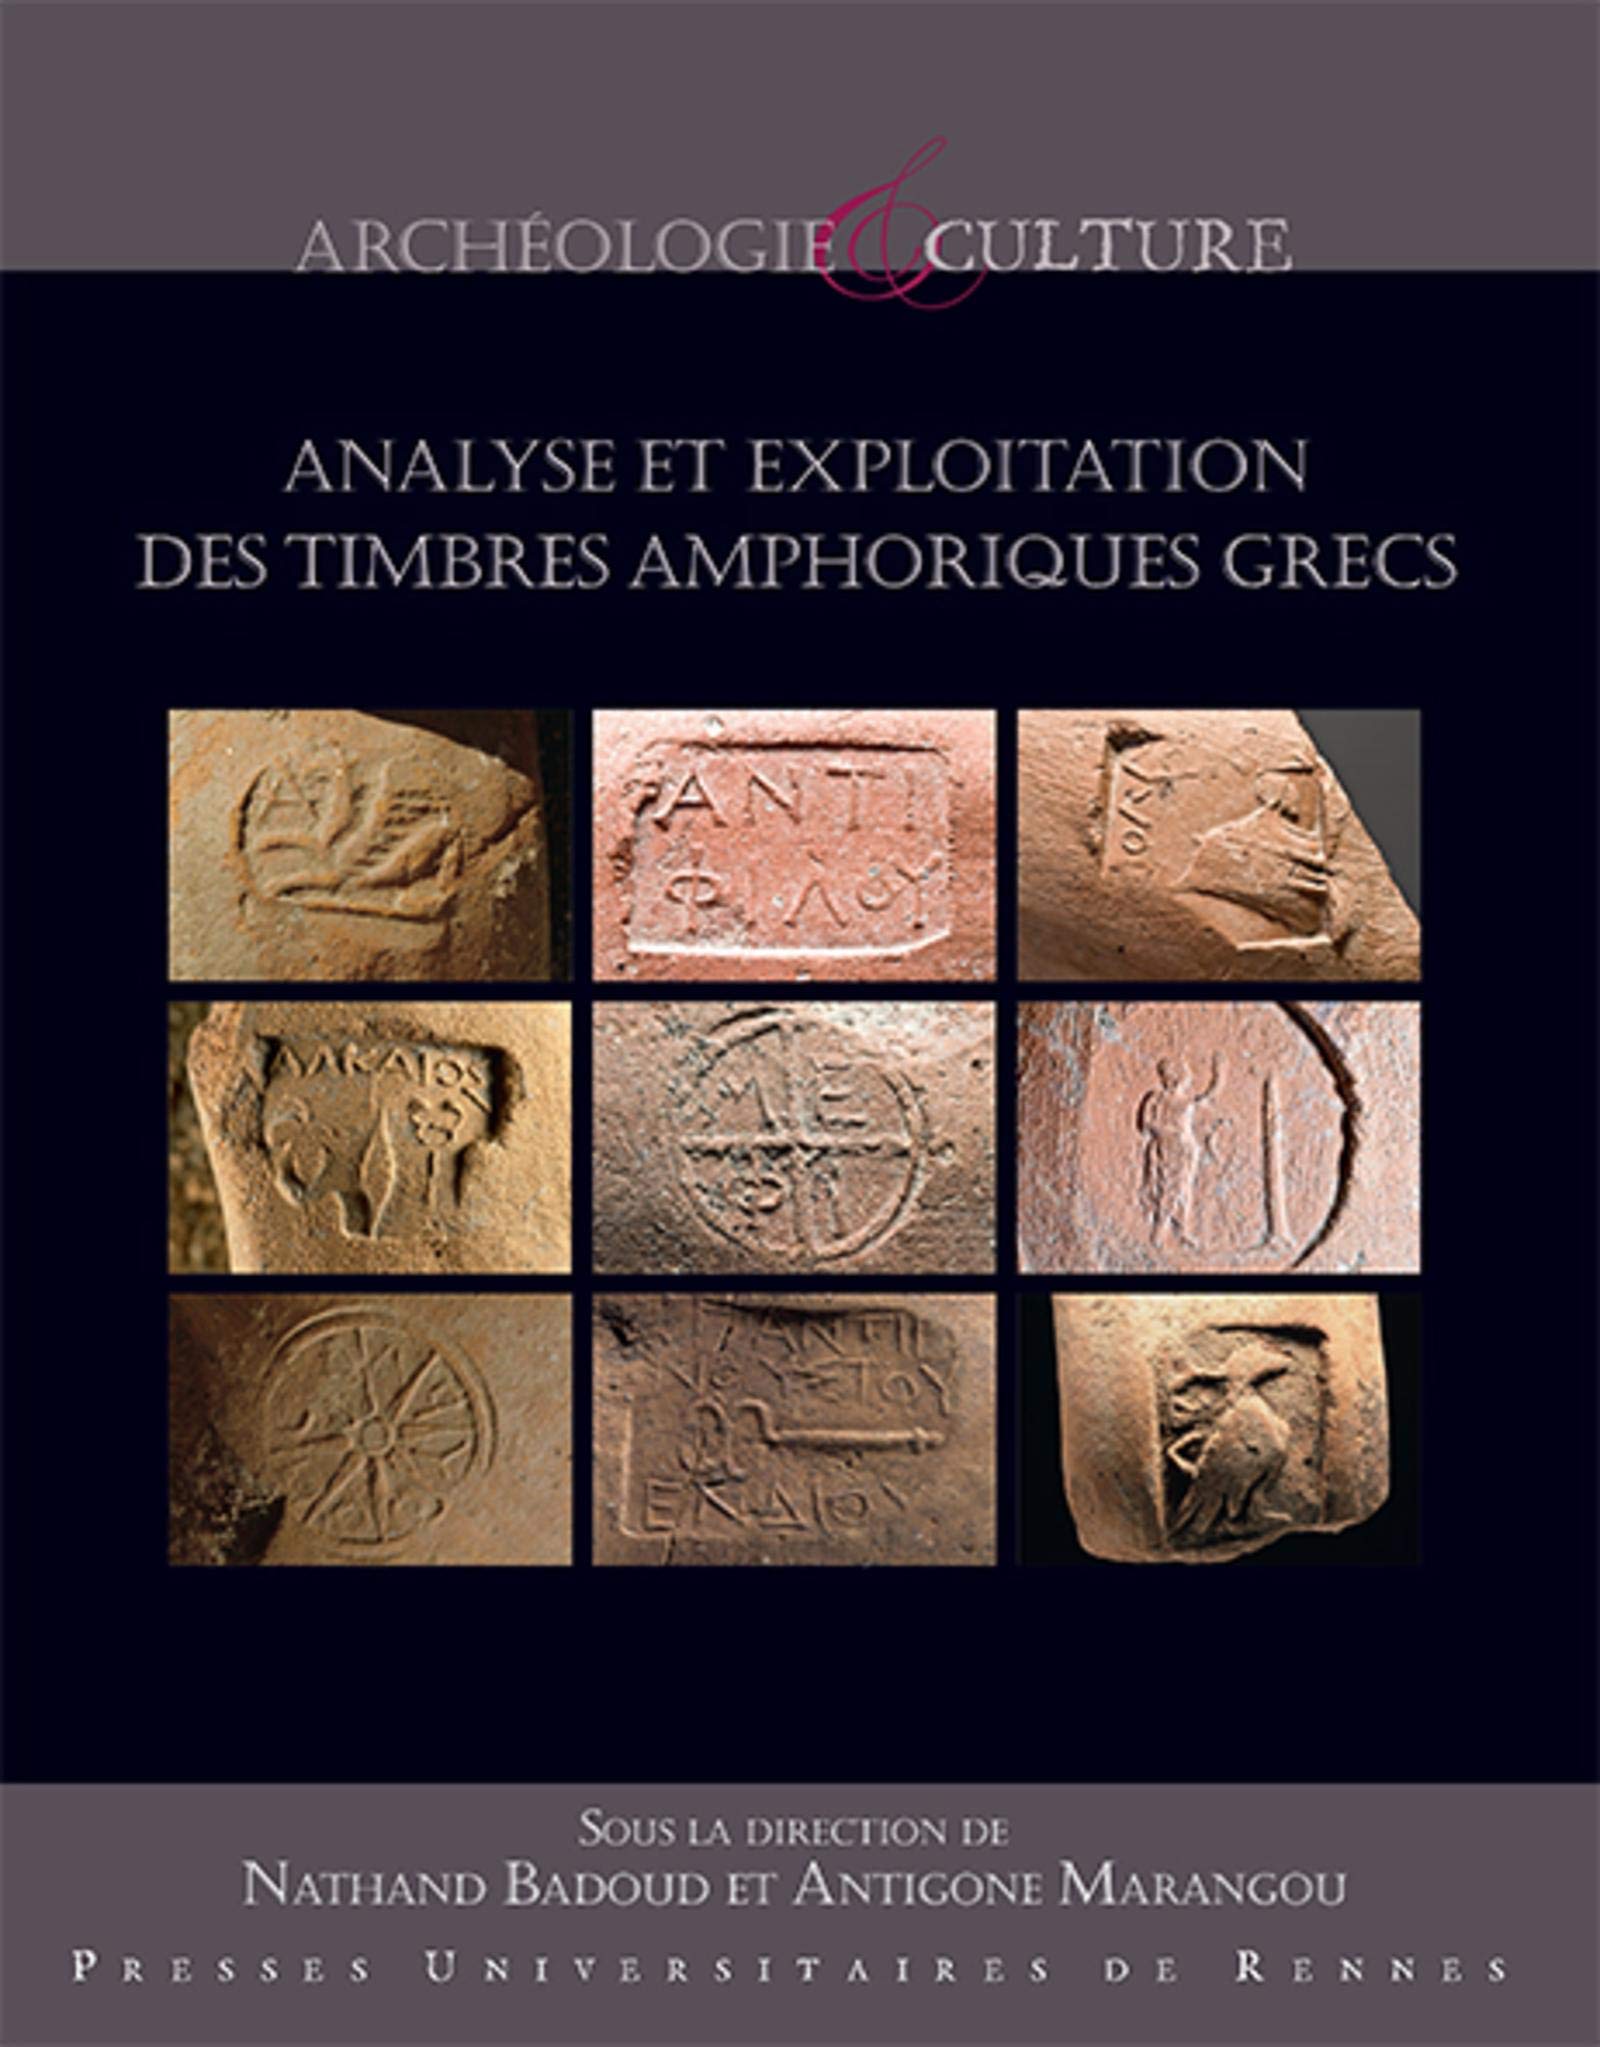 Analyse et exploitation des timbres amphoriques grecs, 2019, 392 p.